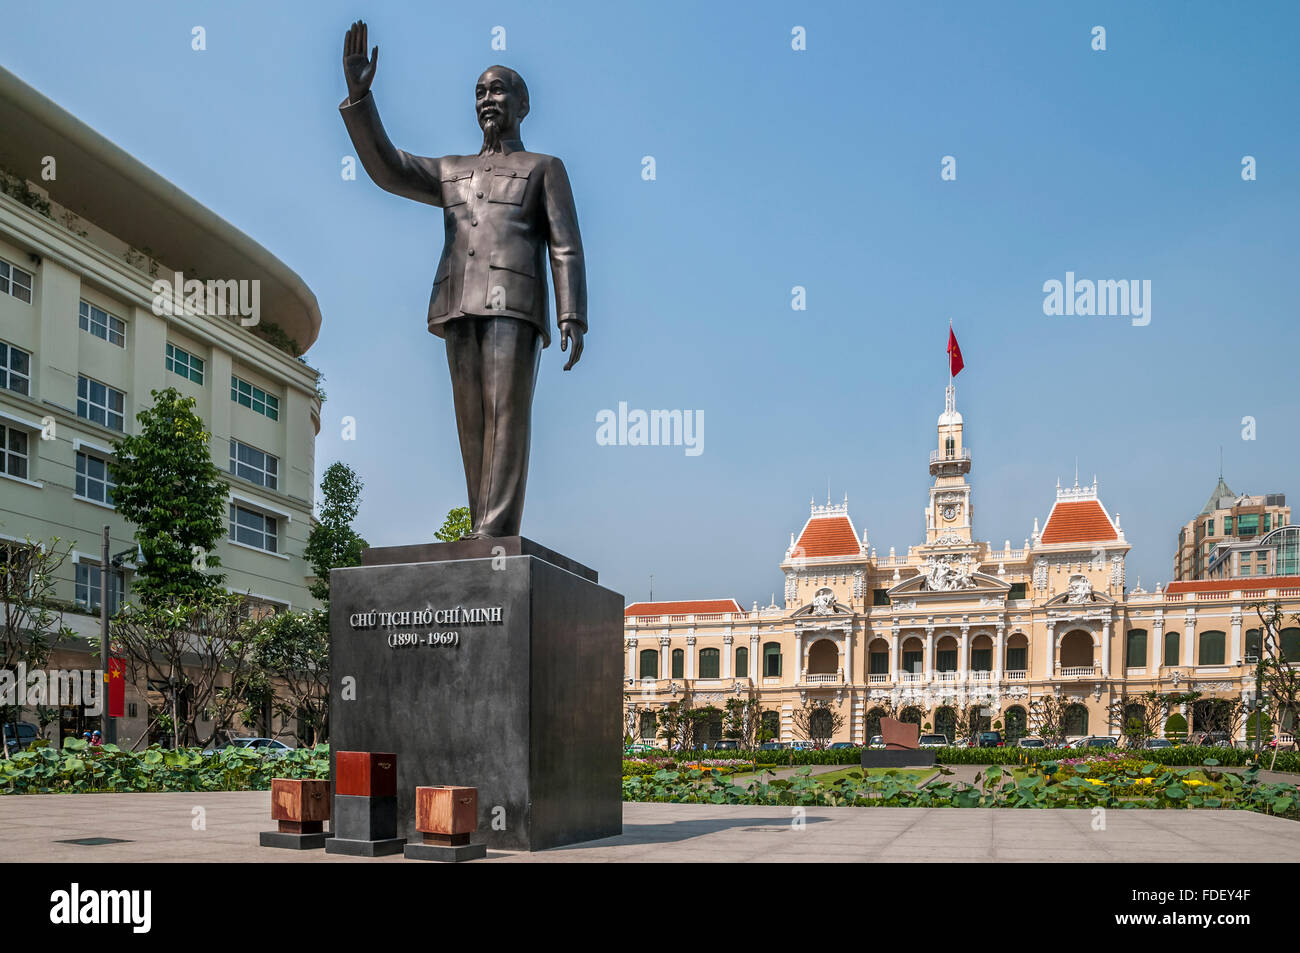 Viet Nam. Vietnam. East Asia. Ho Chi Minh city. Saigon Ho Chi Minh City Hall or Hotel de Ville de Saigon. Statue of Ho Chi Minh Stock Photo